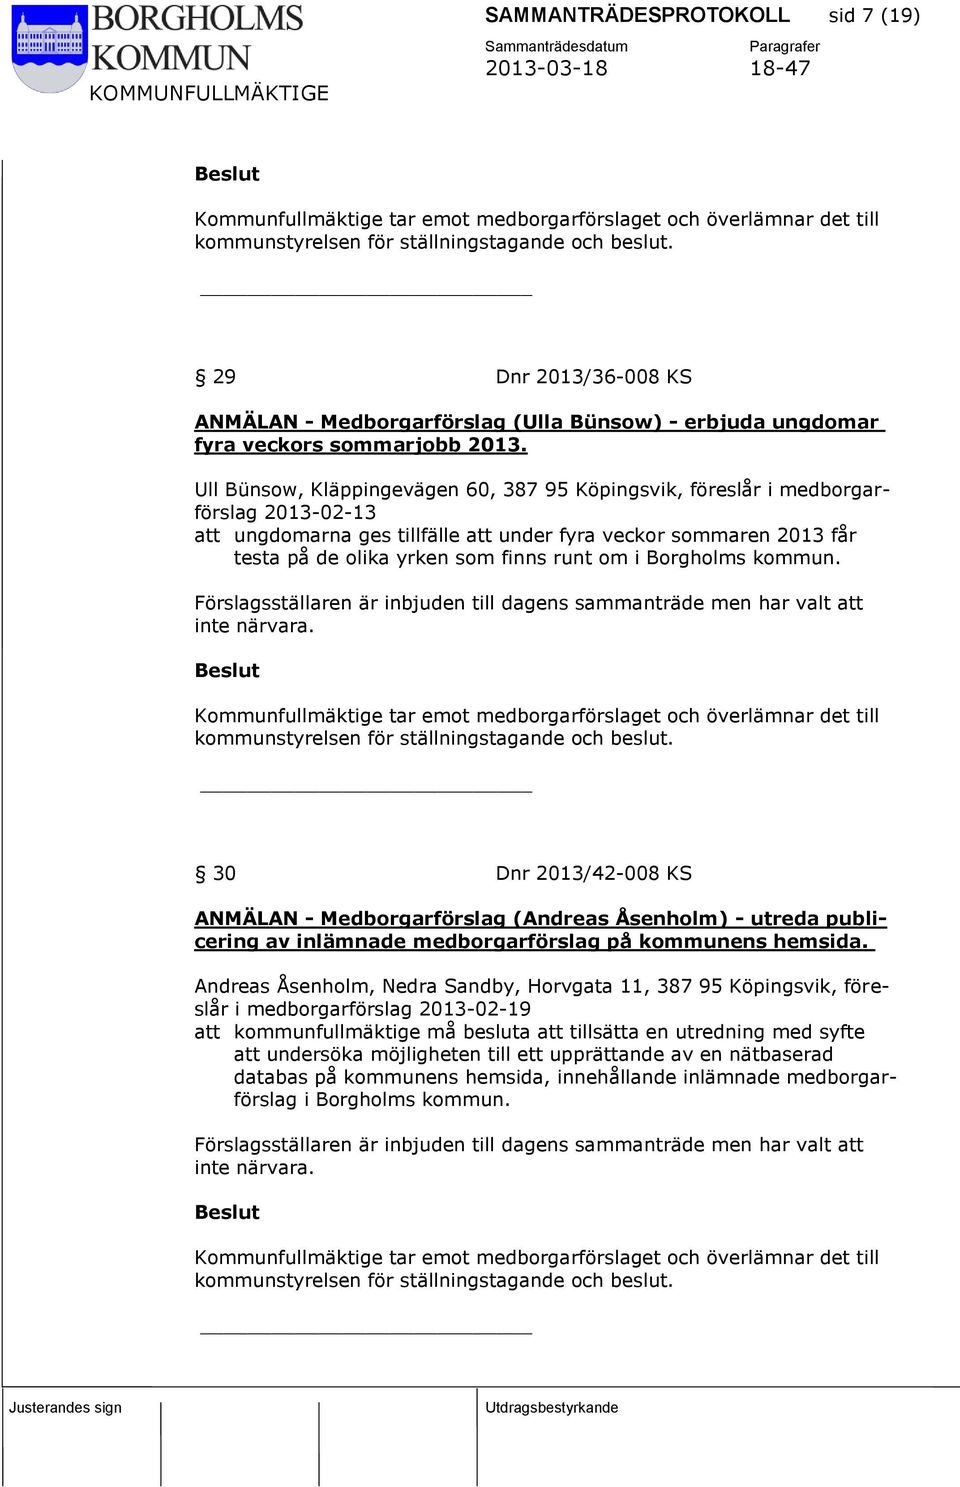 Ull Bünsow, Kläppingevägen 60, 387 95 Köpingsvik, föreslår i medborgarförslag 2013-02-13 att ungdomarna ges tillfälle att under fyra veckor sommaren 2013 får testa på de olika yrken som finns runt om